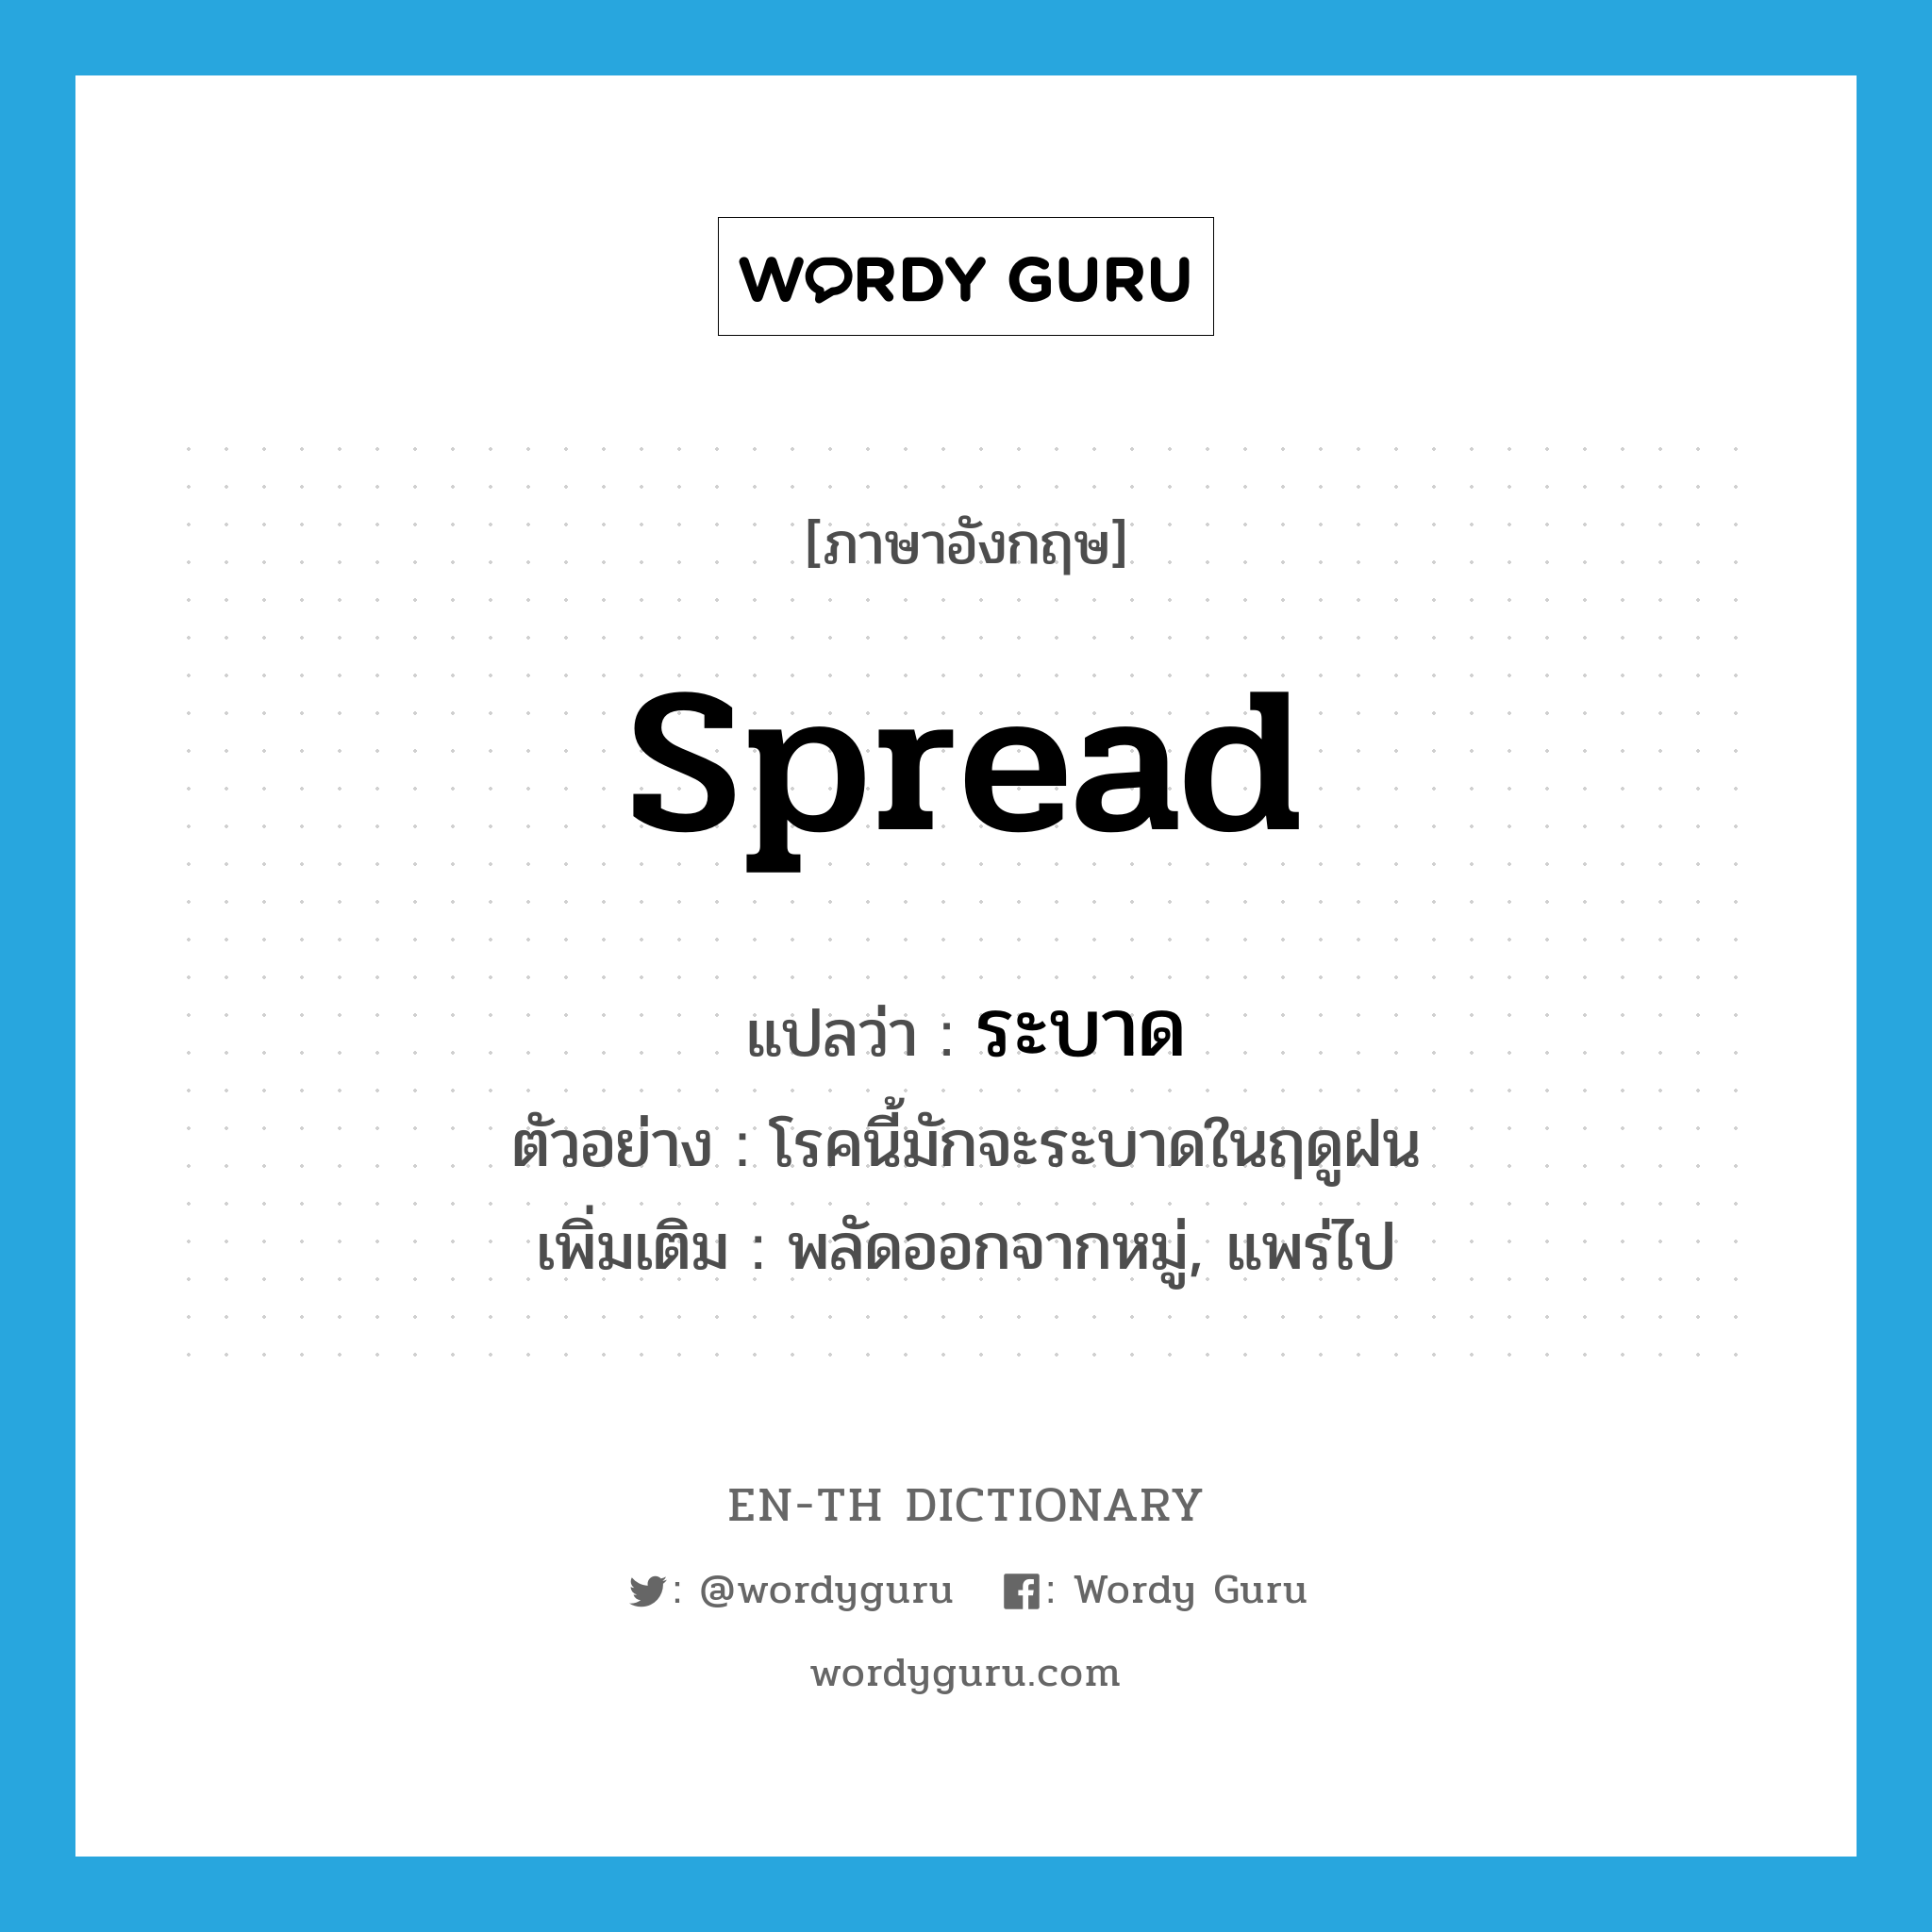 spread แปลว่า?, คำศัพท์ภาษาอังกฤษ spread แปลว่า ระบาด ประเภท V ตัวอย่าง โรคนี้มักจะระบาดในฤดูฝน เพิ่มเติม พลัดออกจากหมู่, แพร่ไป หมวด V